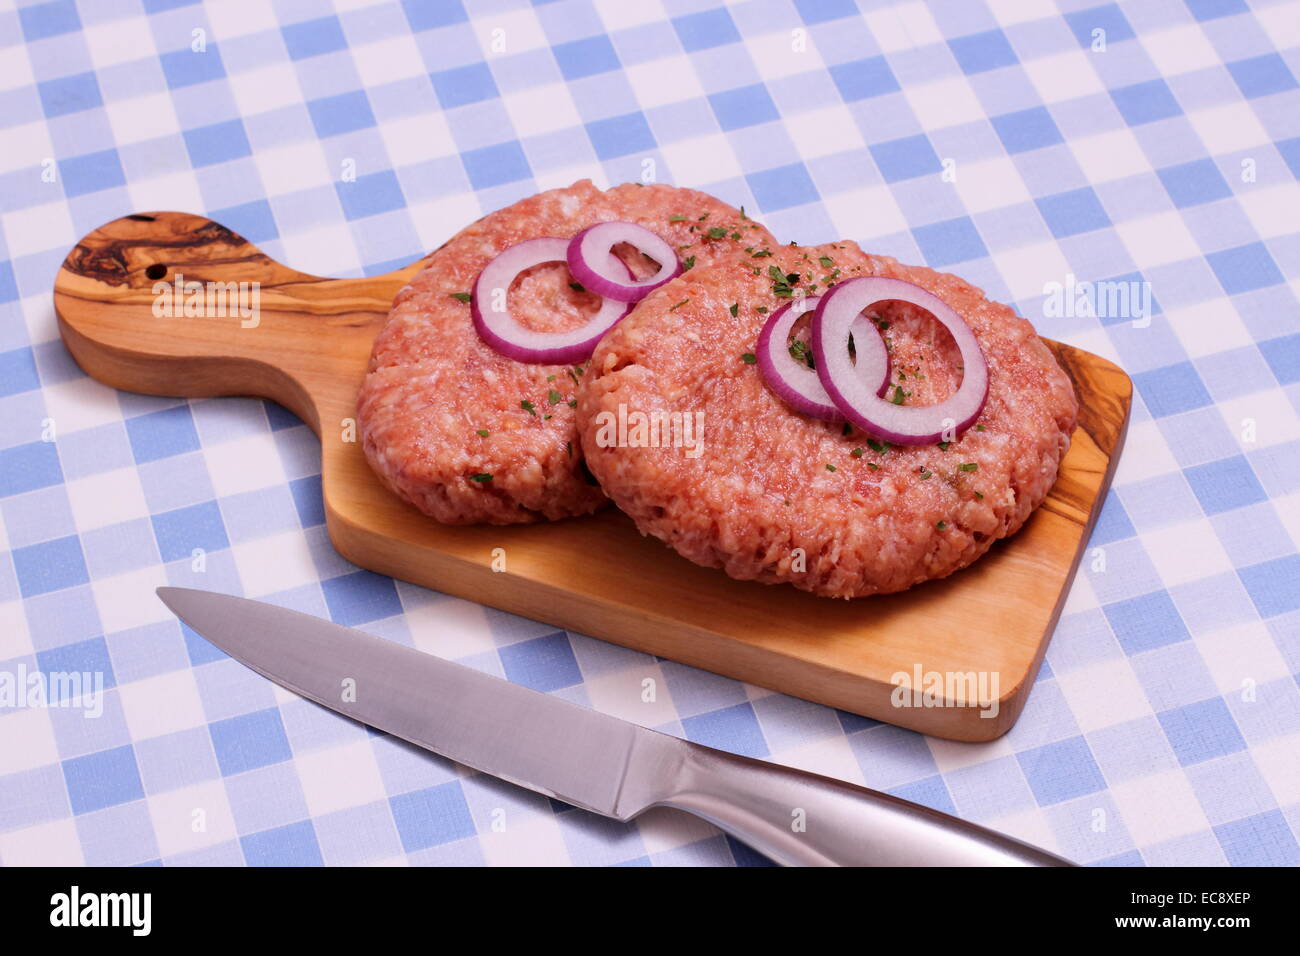 Due hamburger sul tagliere di legno, bianco e blu a quadretti Foto Stock